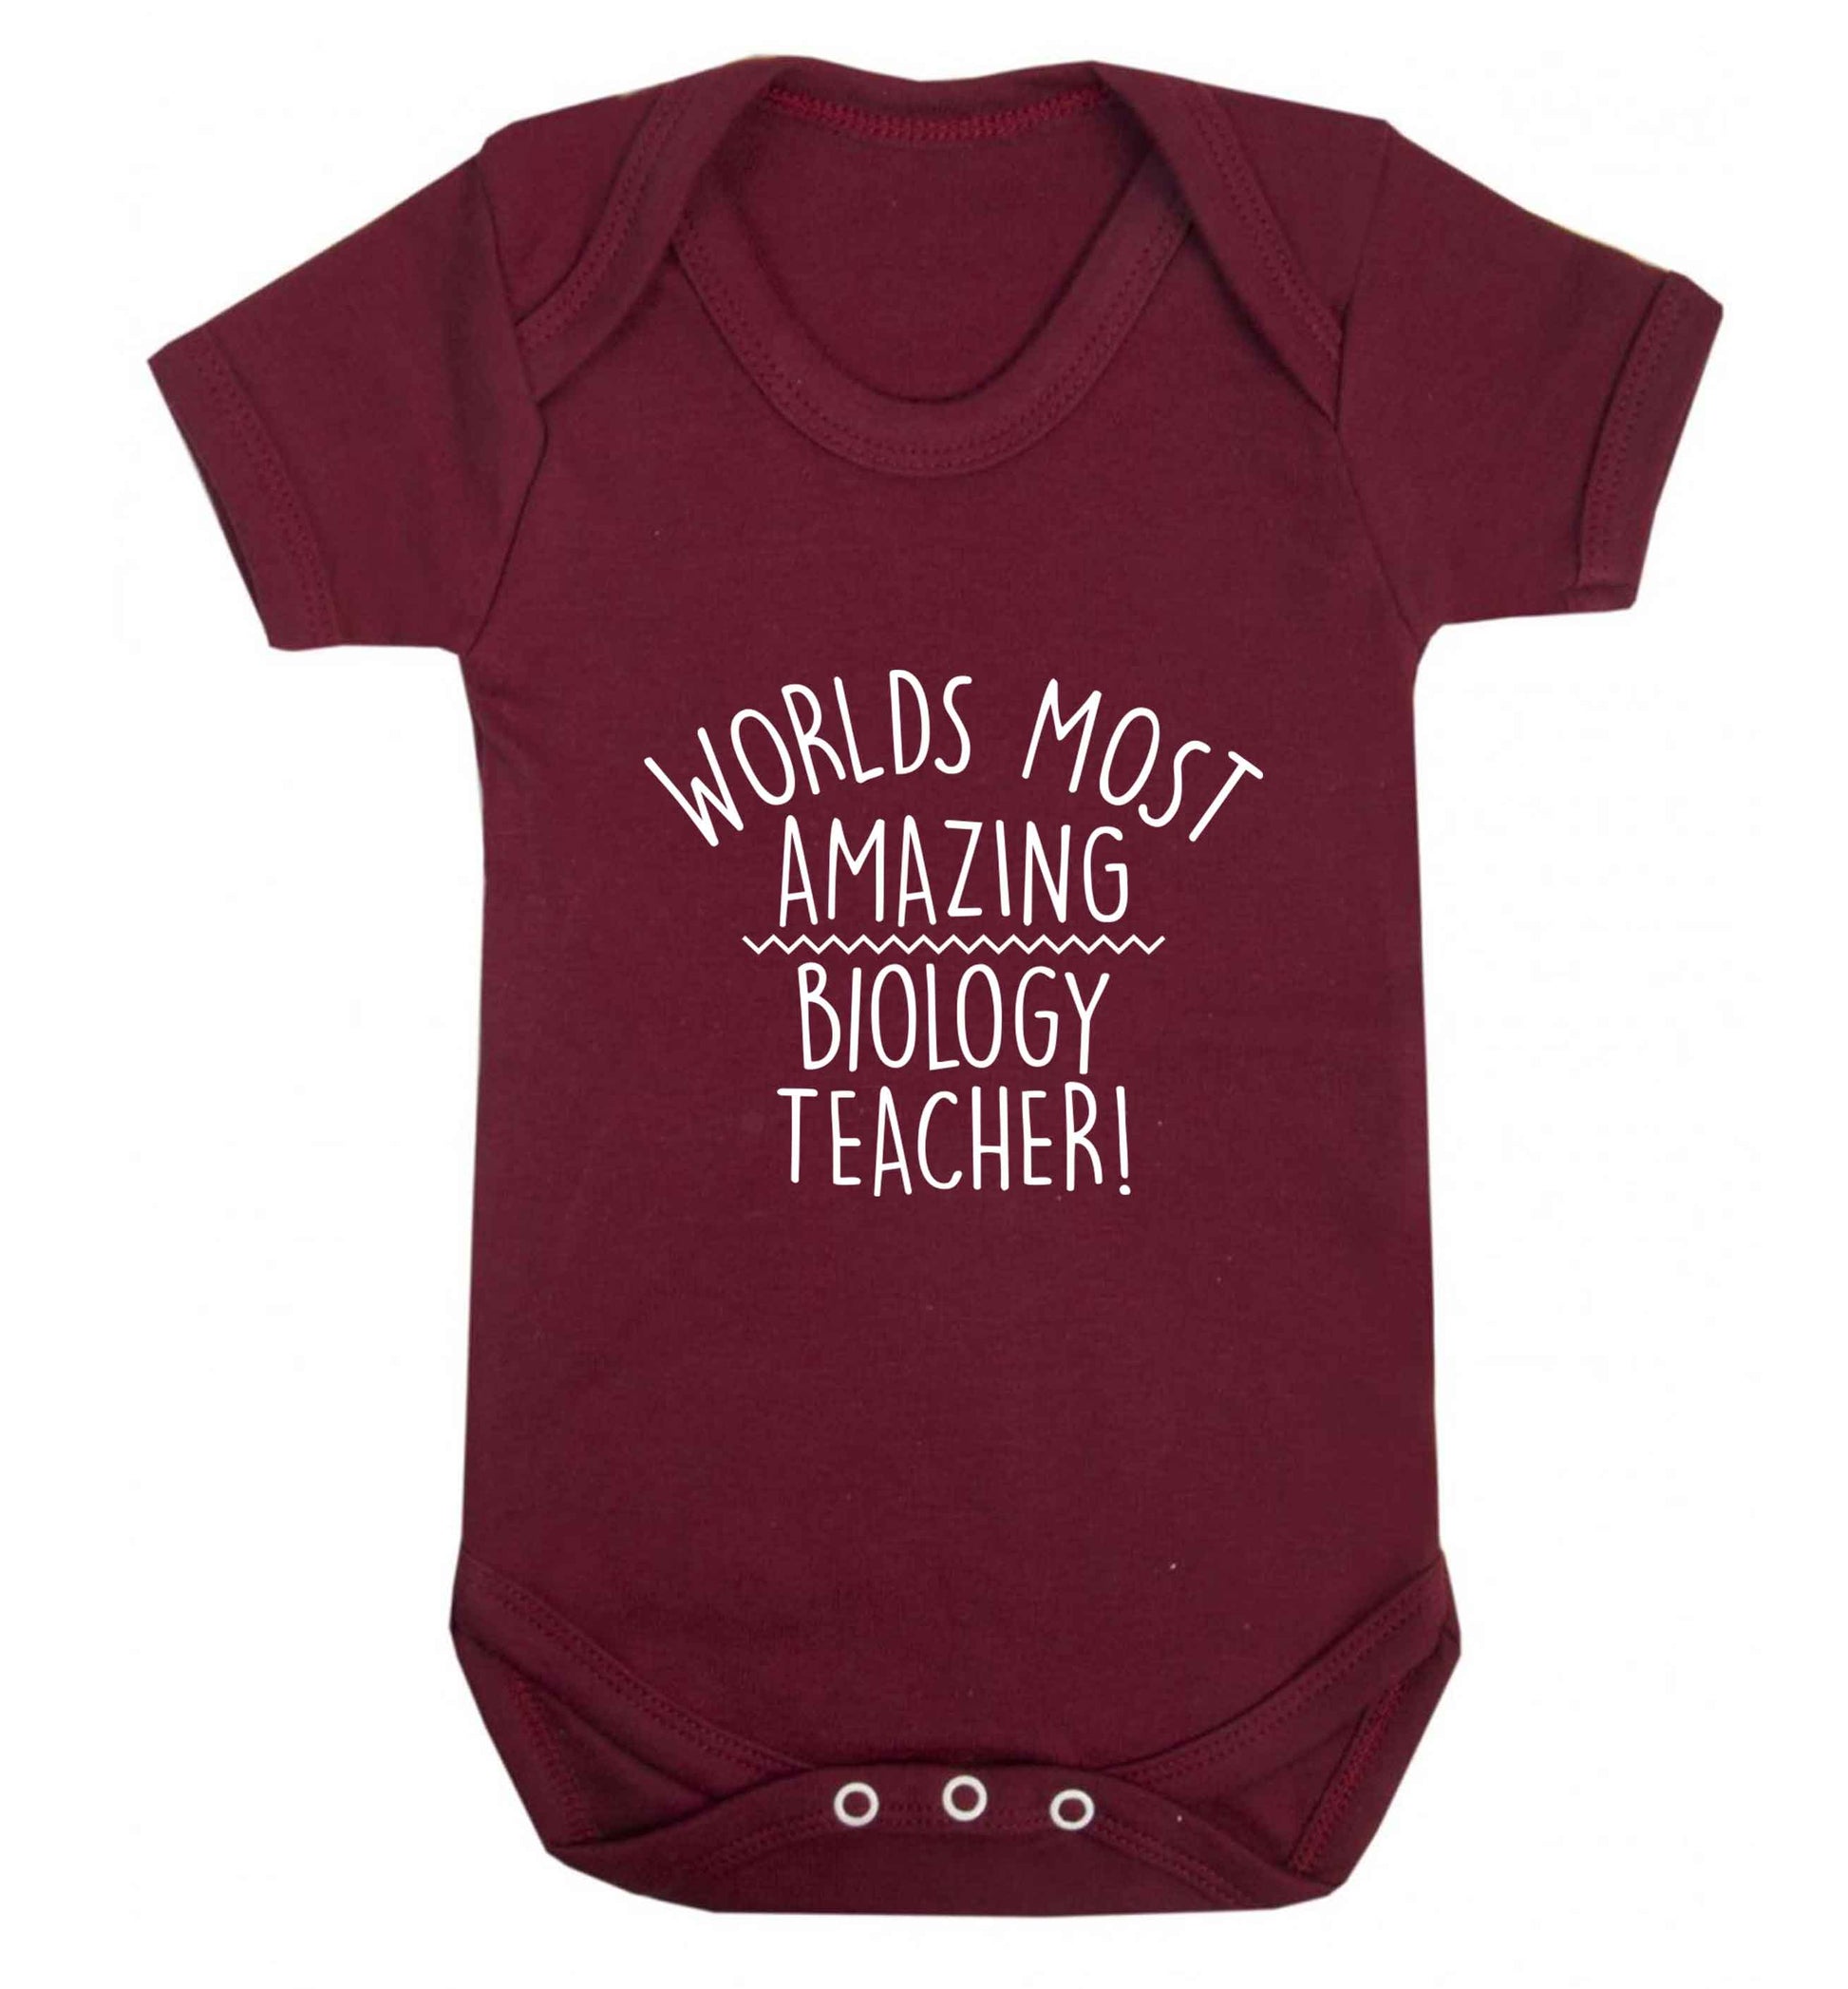 Worlds most amazing biology teacher baby vest maroon 18-24 months